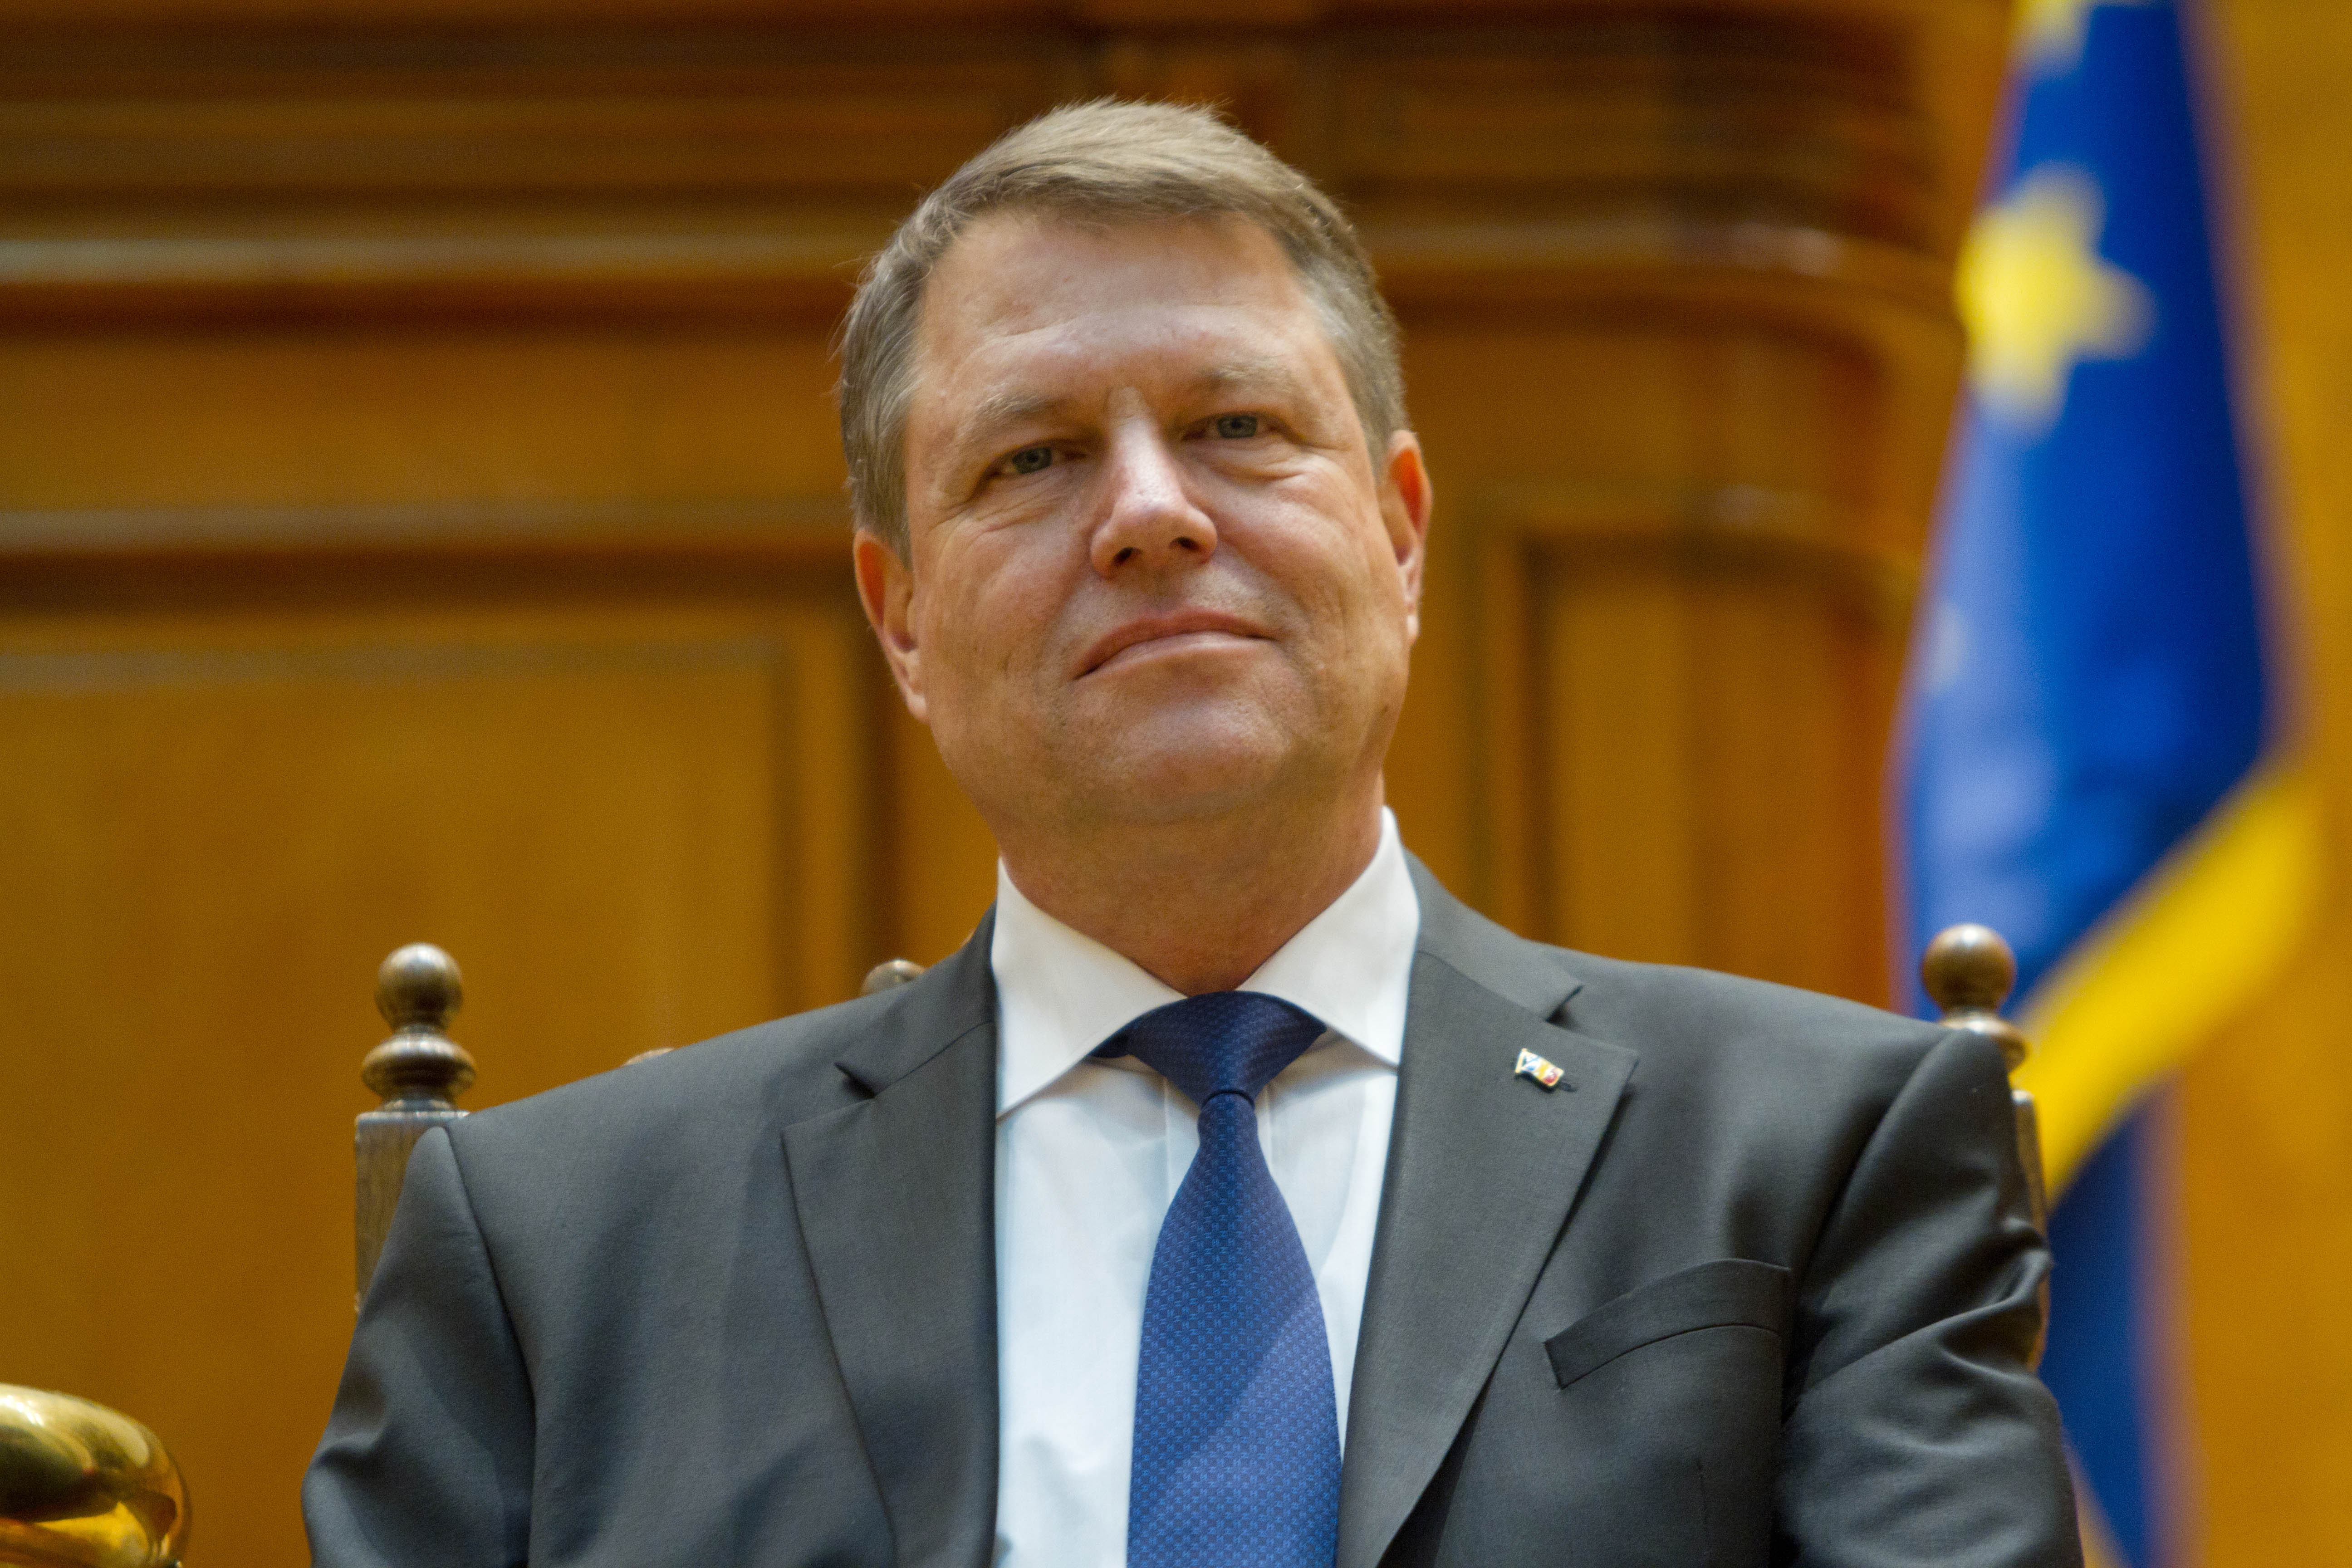 Cea mai nouă lege promulgată de Klaus Iohannis: Preşedintele a promulgat legea privind protecţia şi promovarea drepturilor copilului